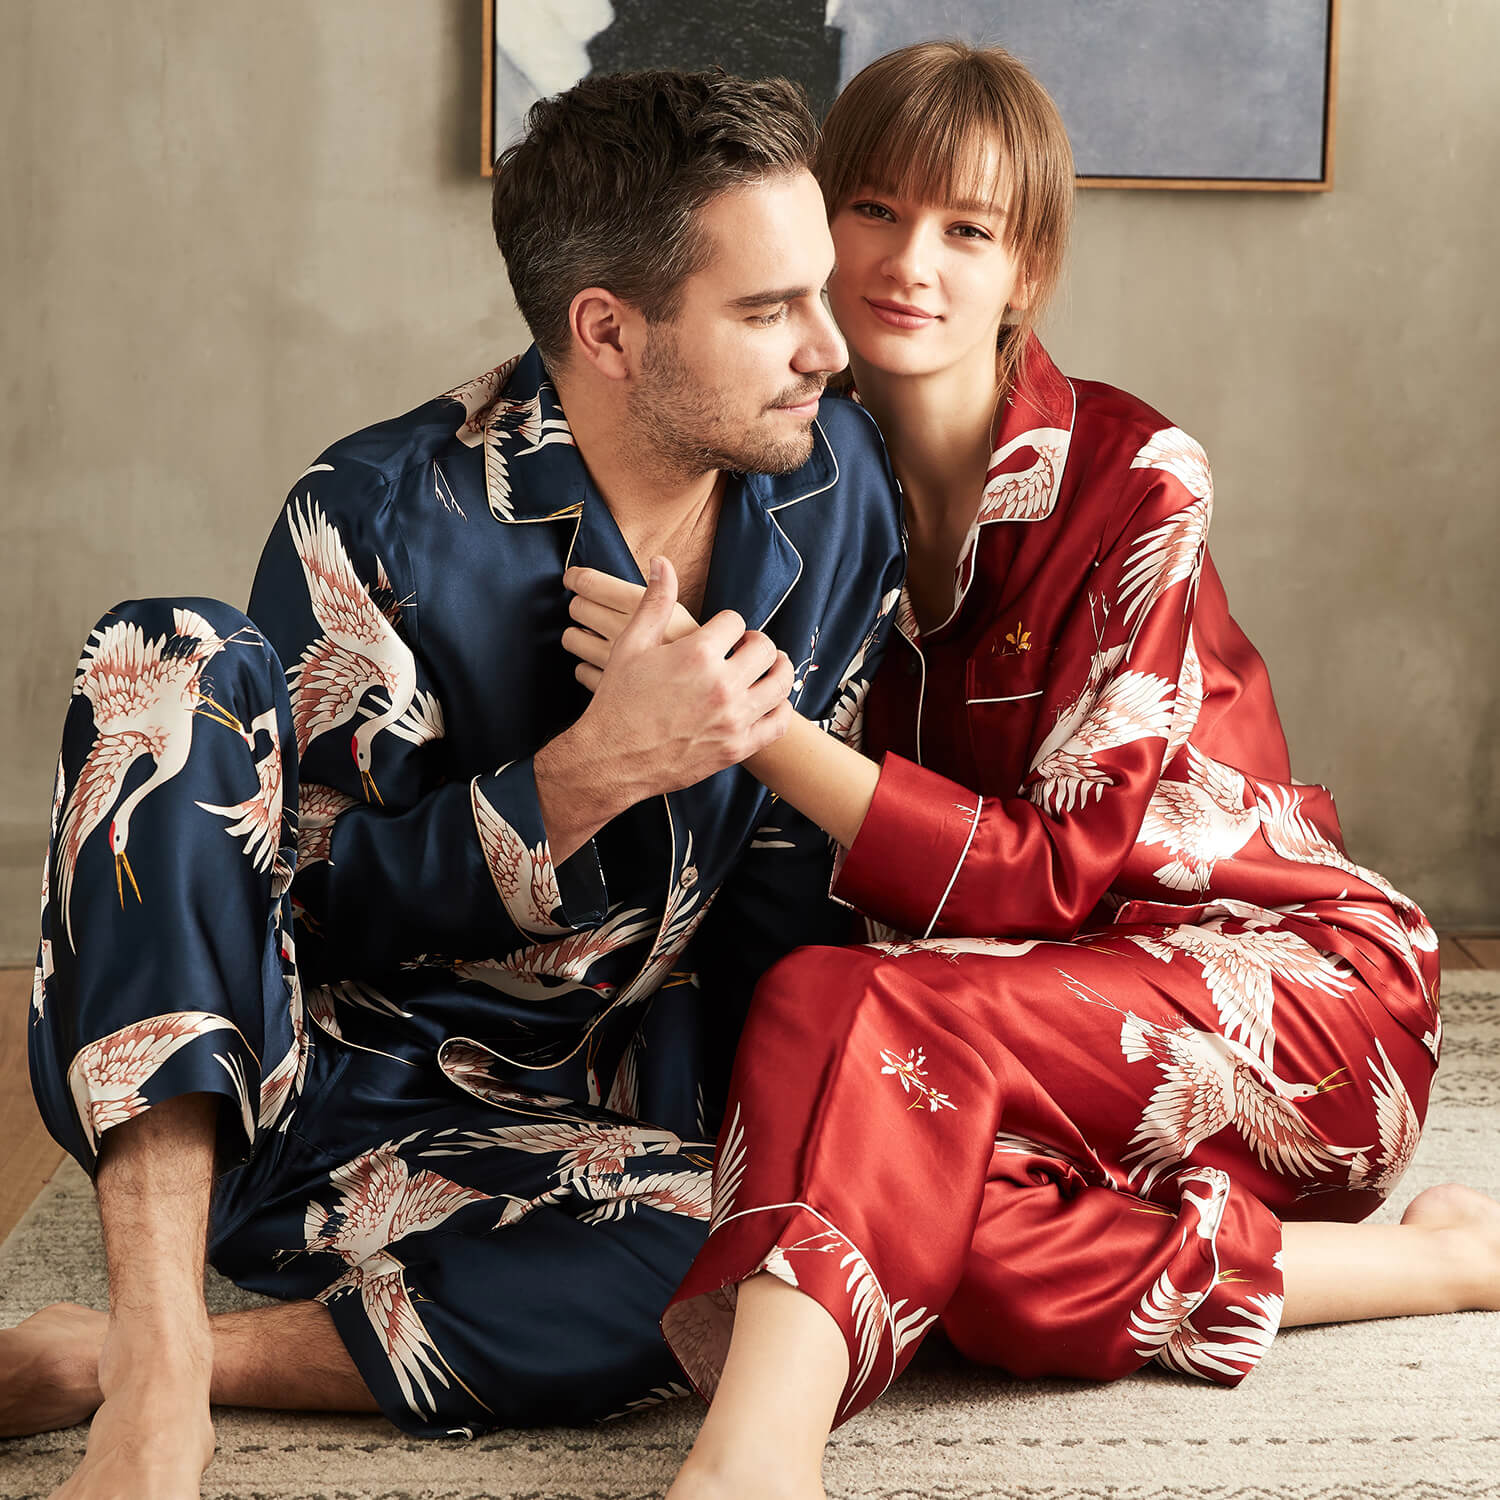 Conjunto de pijamas de seda estampados de lujo para parejas, pijamas a juego de seda para dormir de manga larga